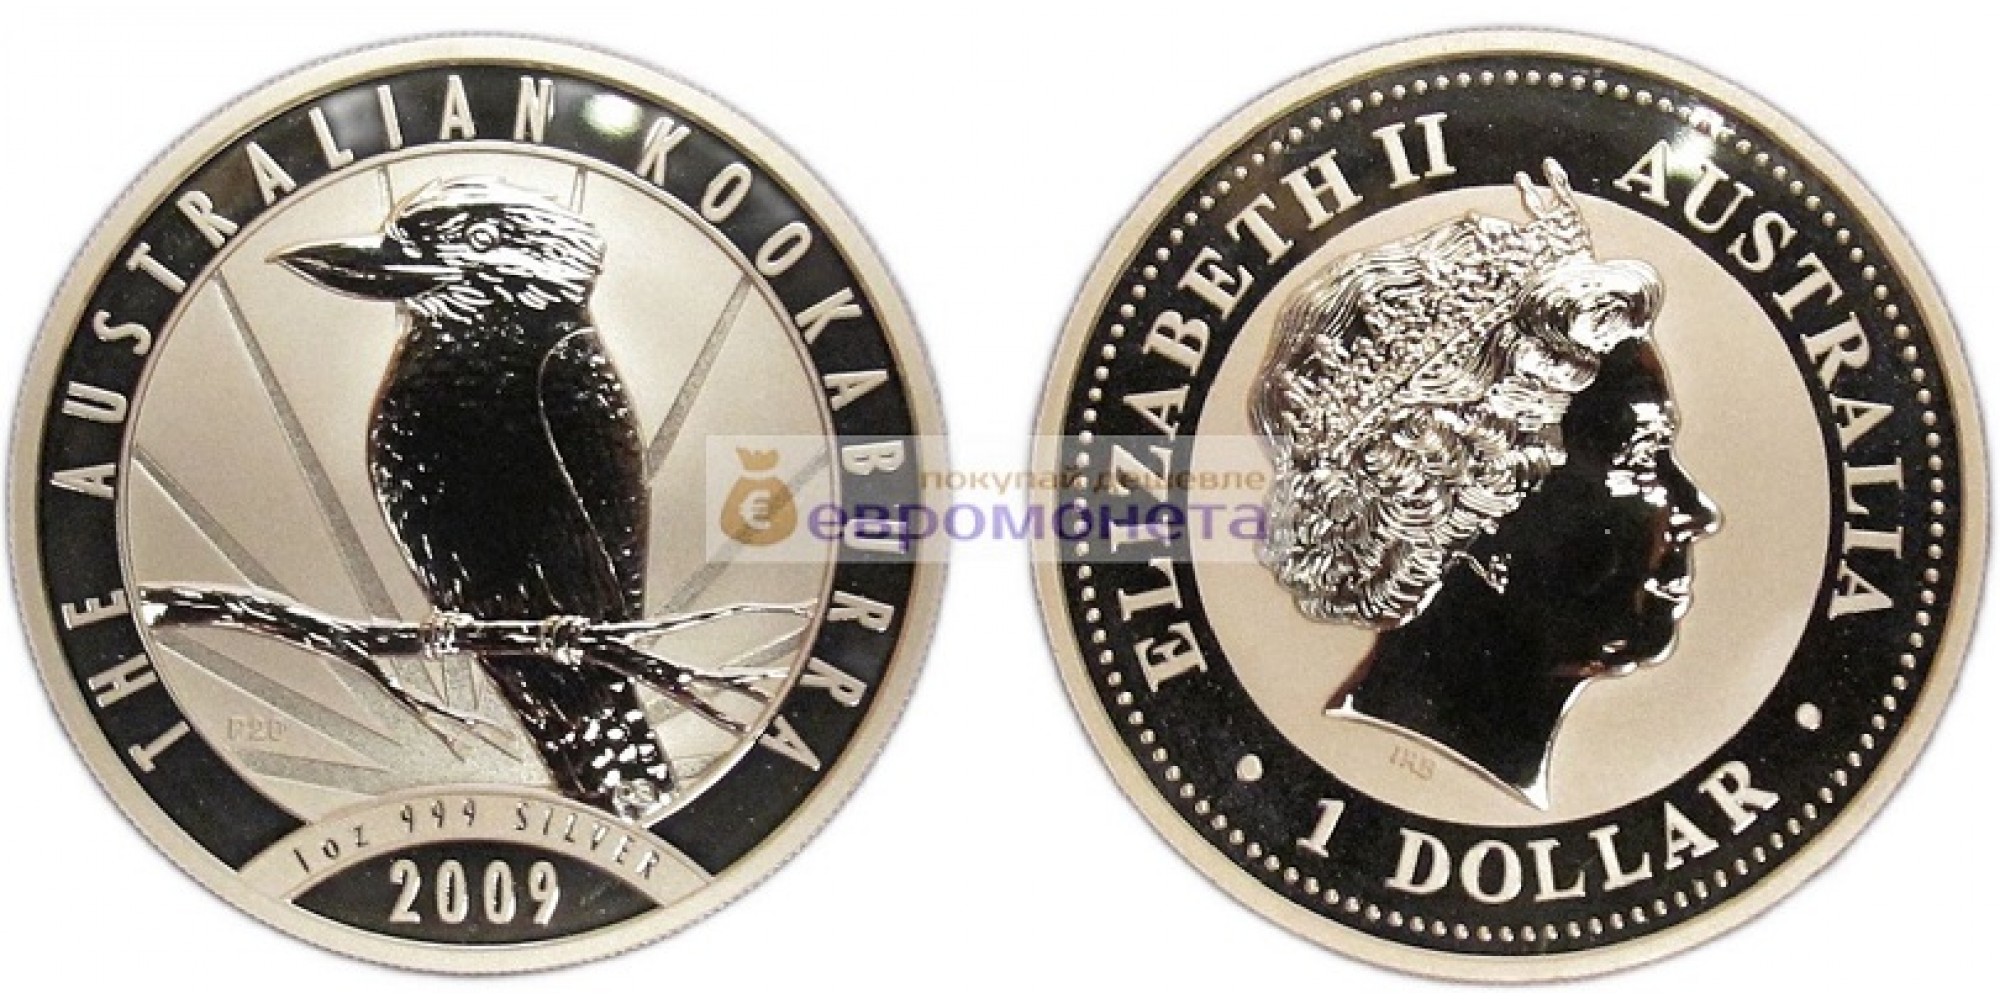 Австралия 1 доллар 2009 год Австралийская Кукабарра kookaburra. Серебро. пруф / proof